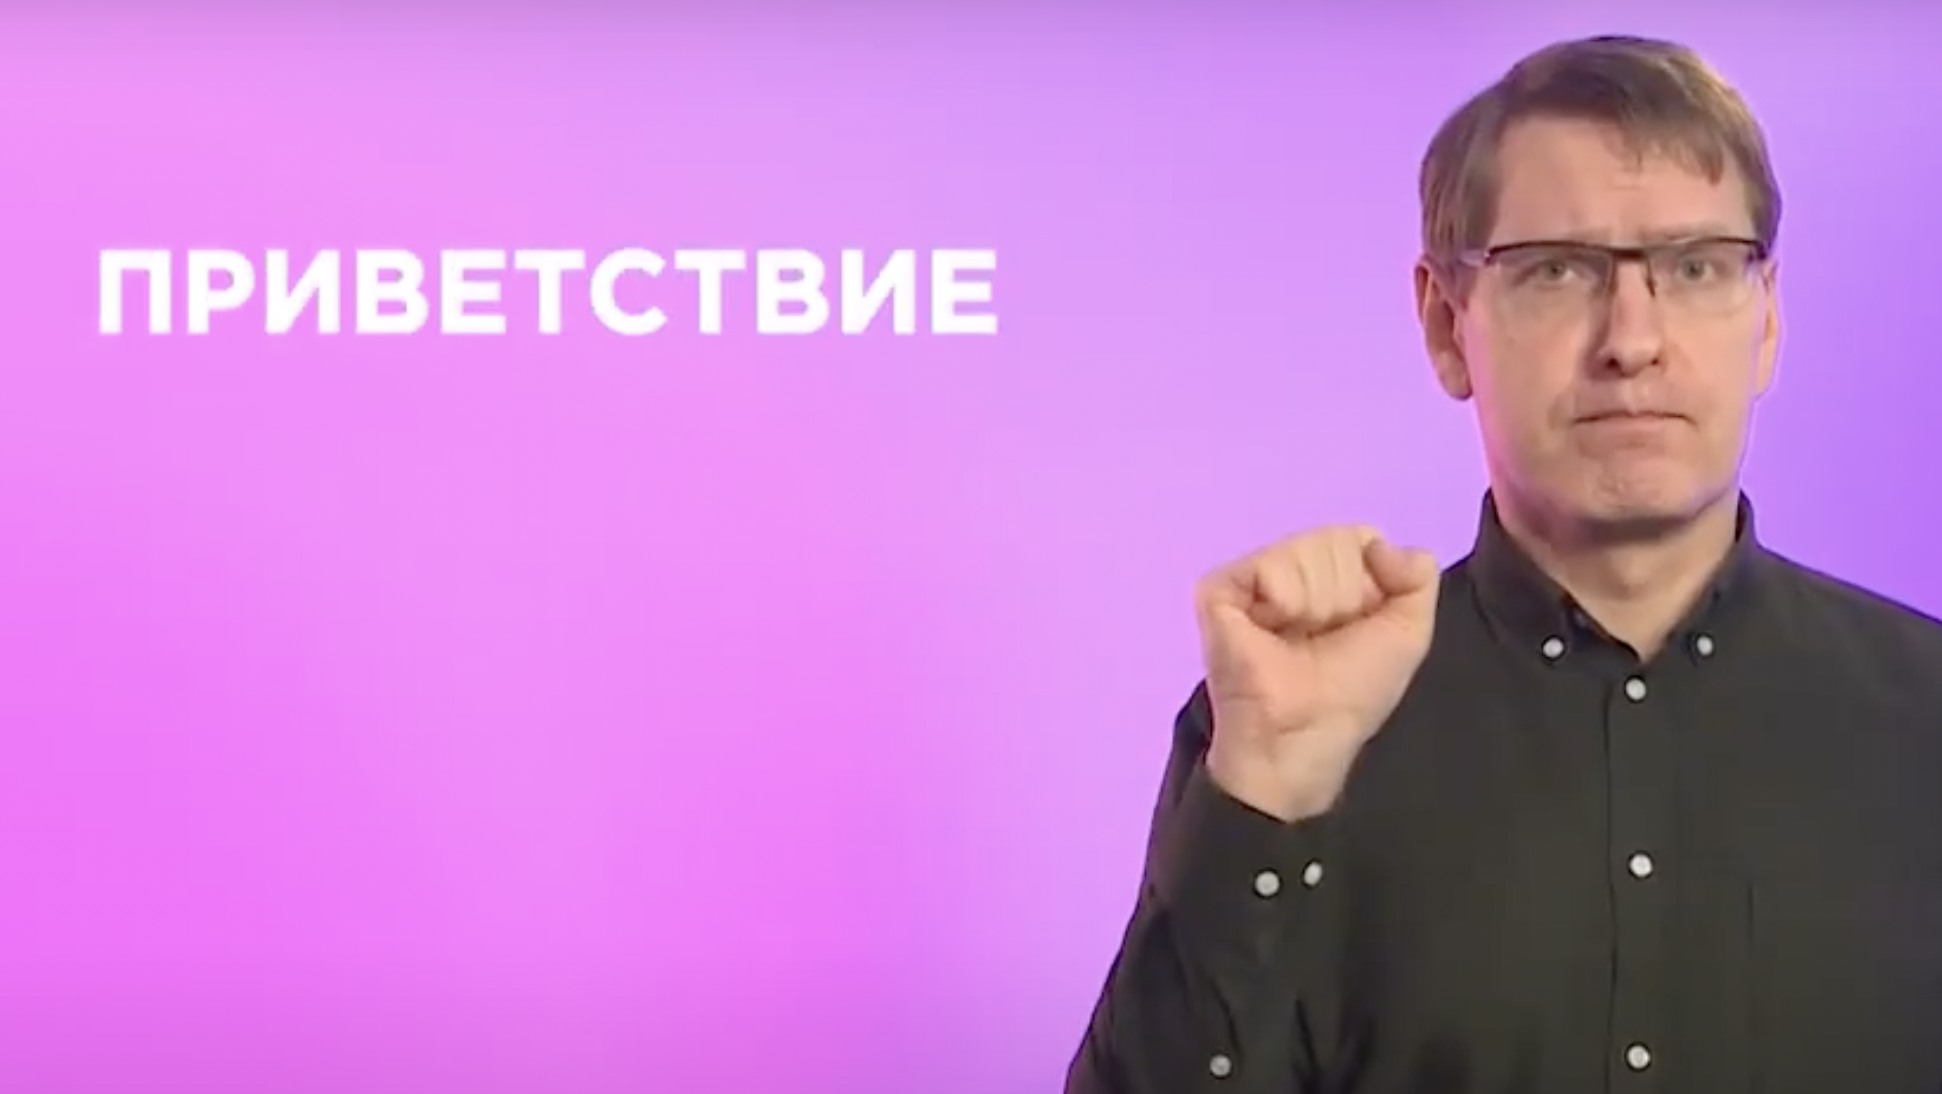 Так можно поприветствовать человека на русском жестовом языке